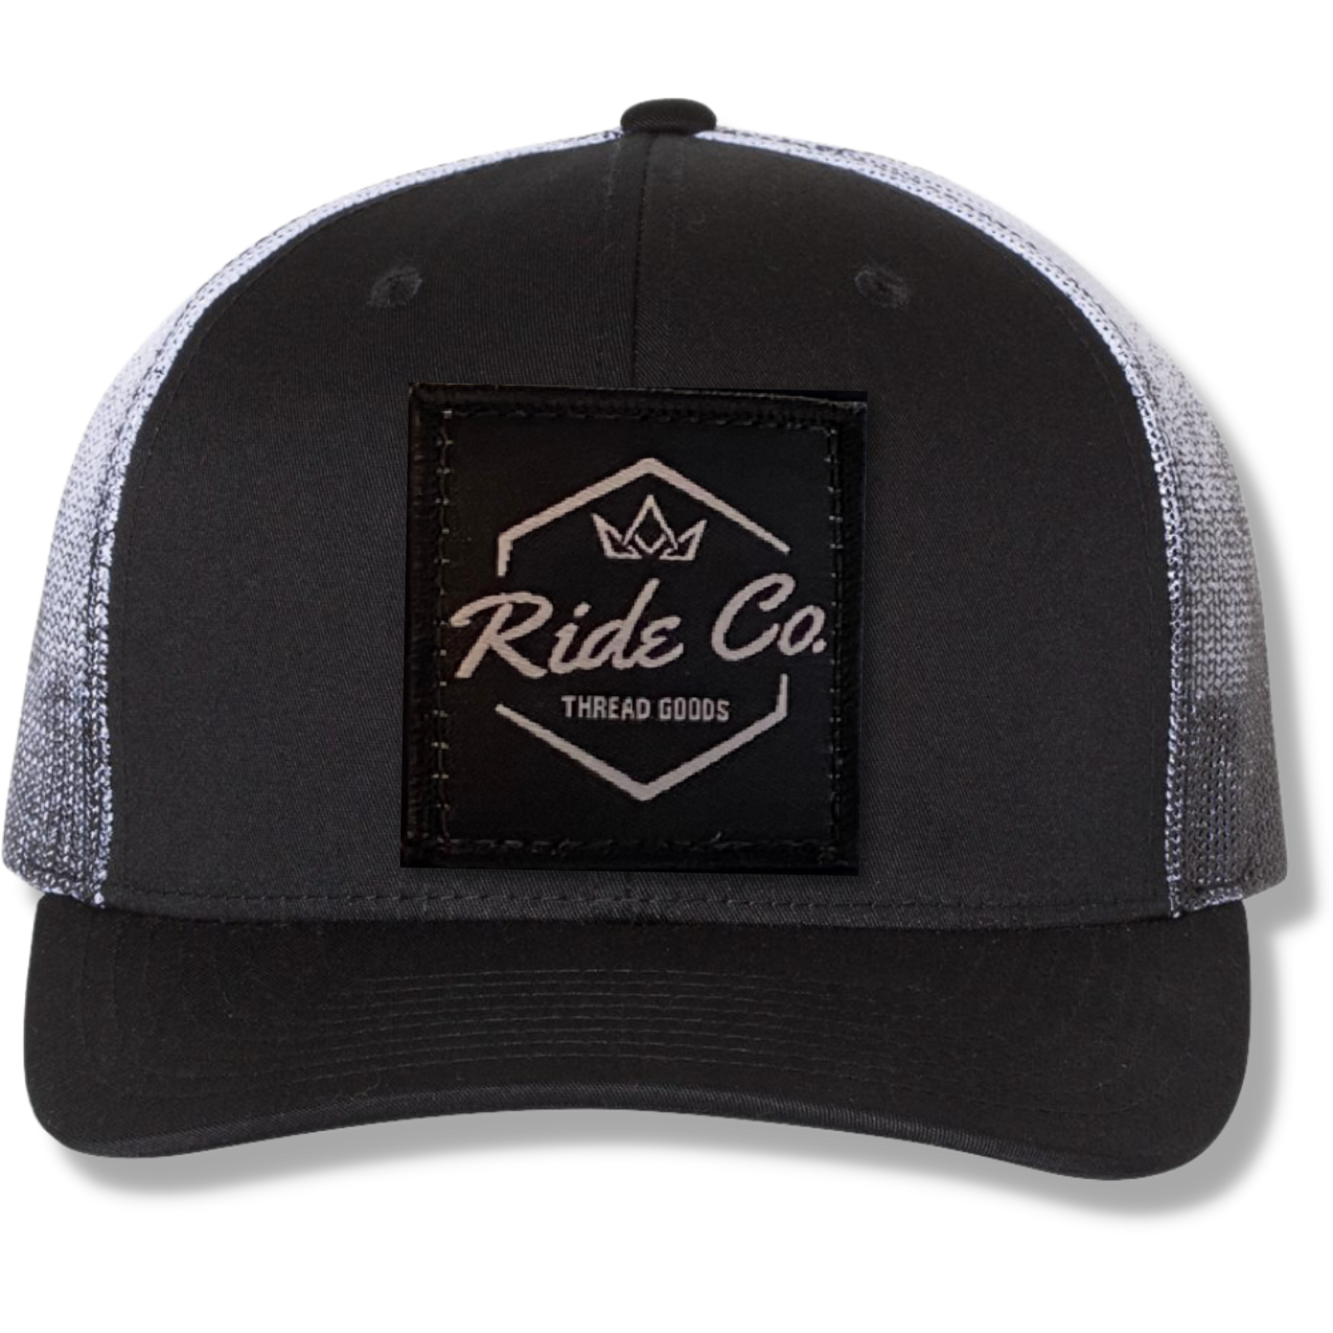 Ride Co. Faded Snapback Trucker